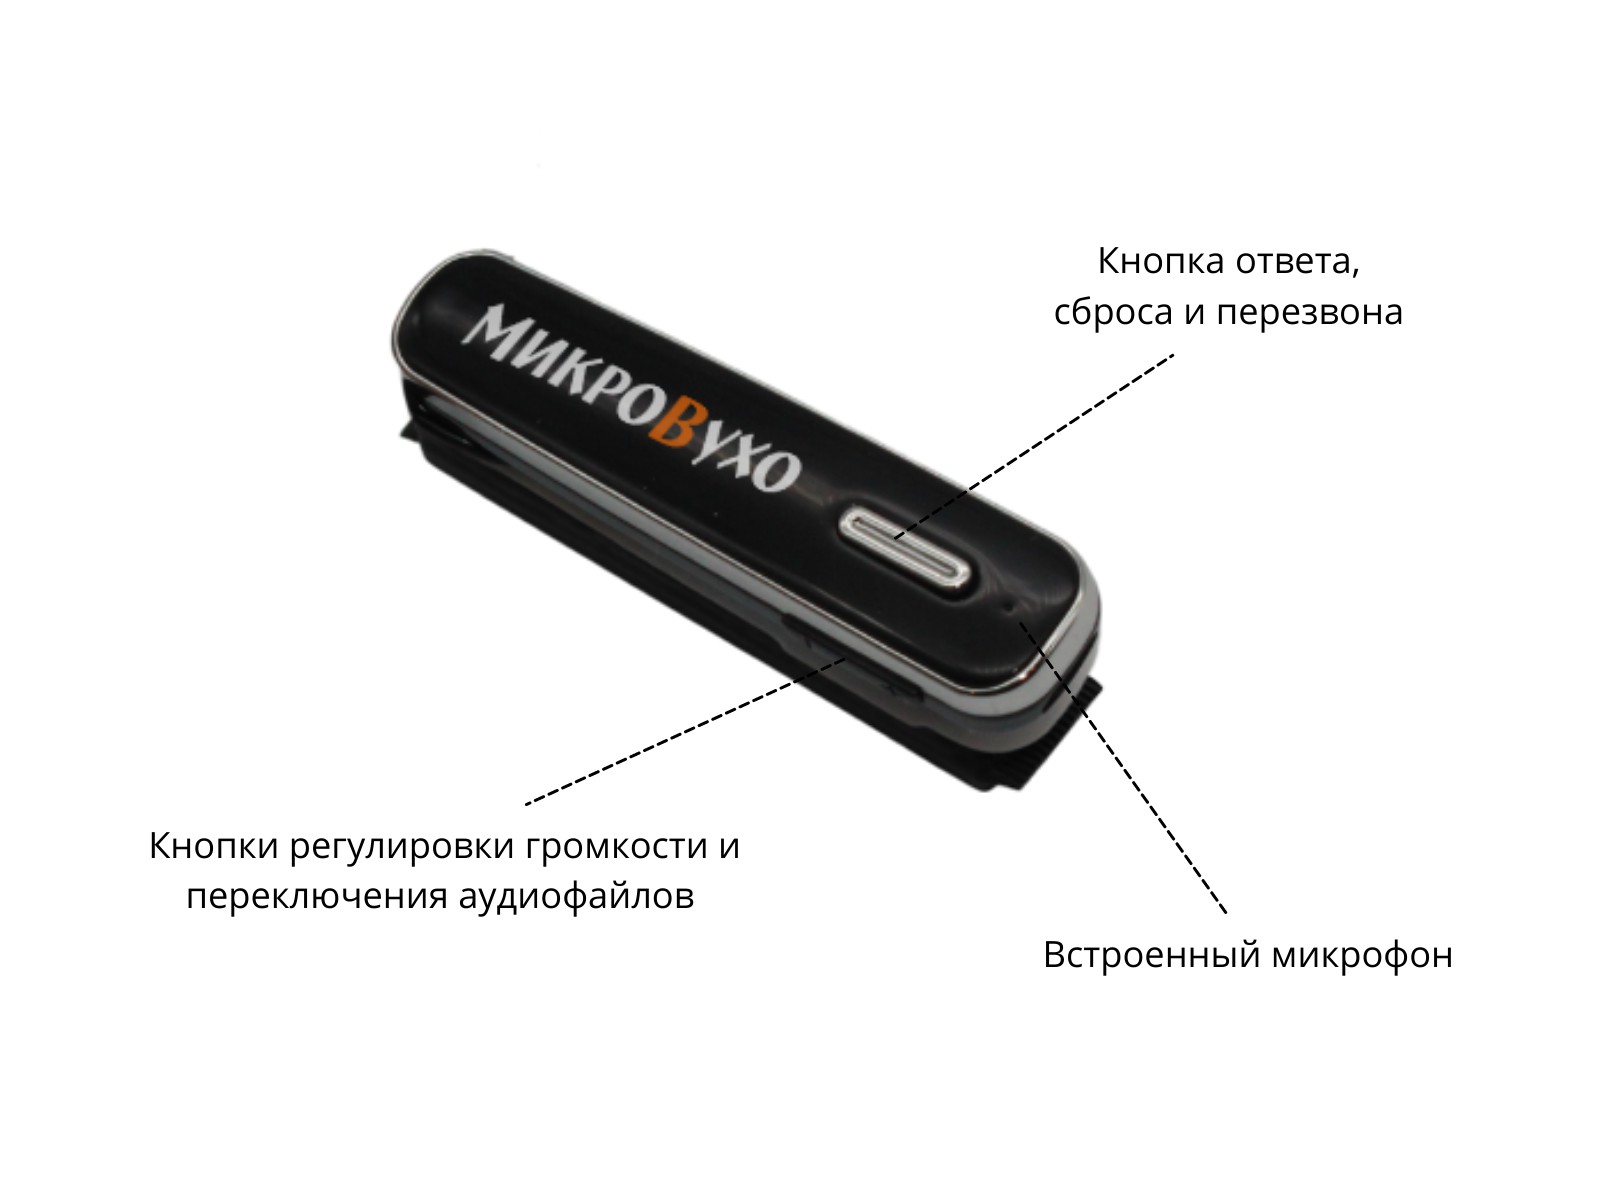 Универсальная гарнитура Bluetooth Box Premier Lite Plus с капсулой Nano 4 мм и магнитами 2 мм - изображение 6